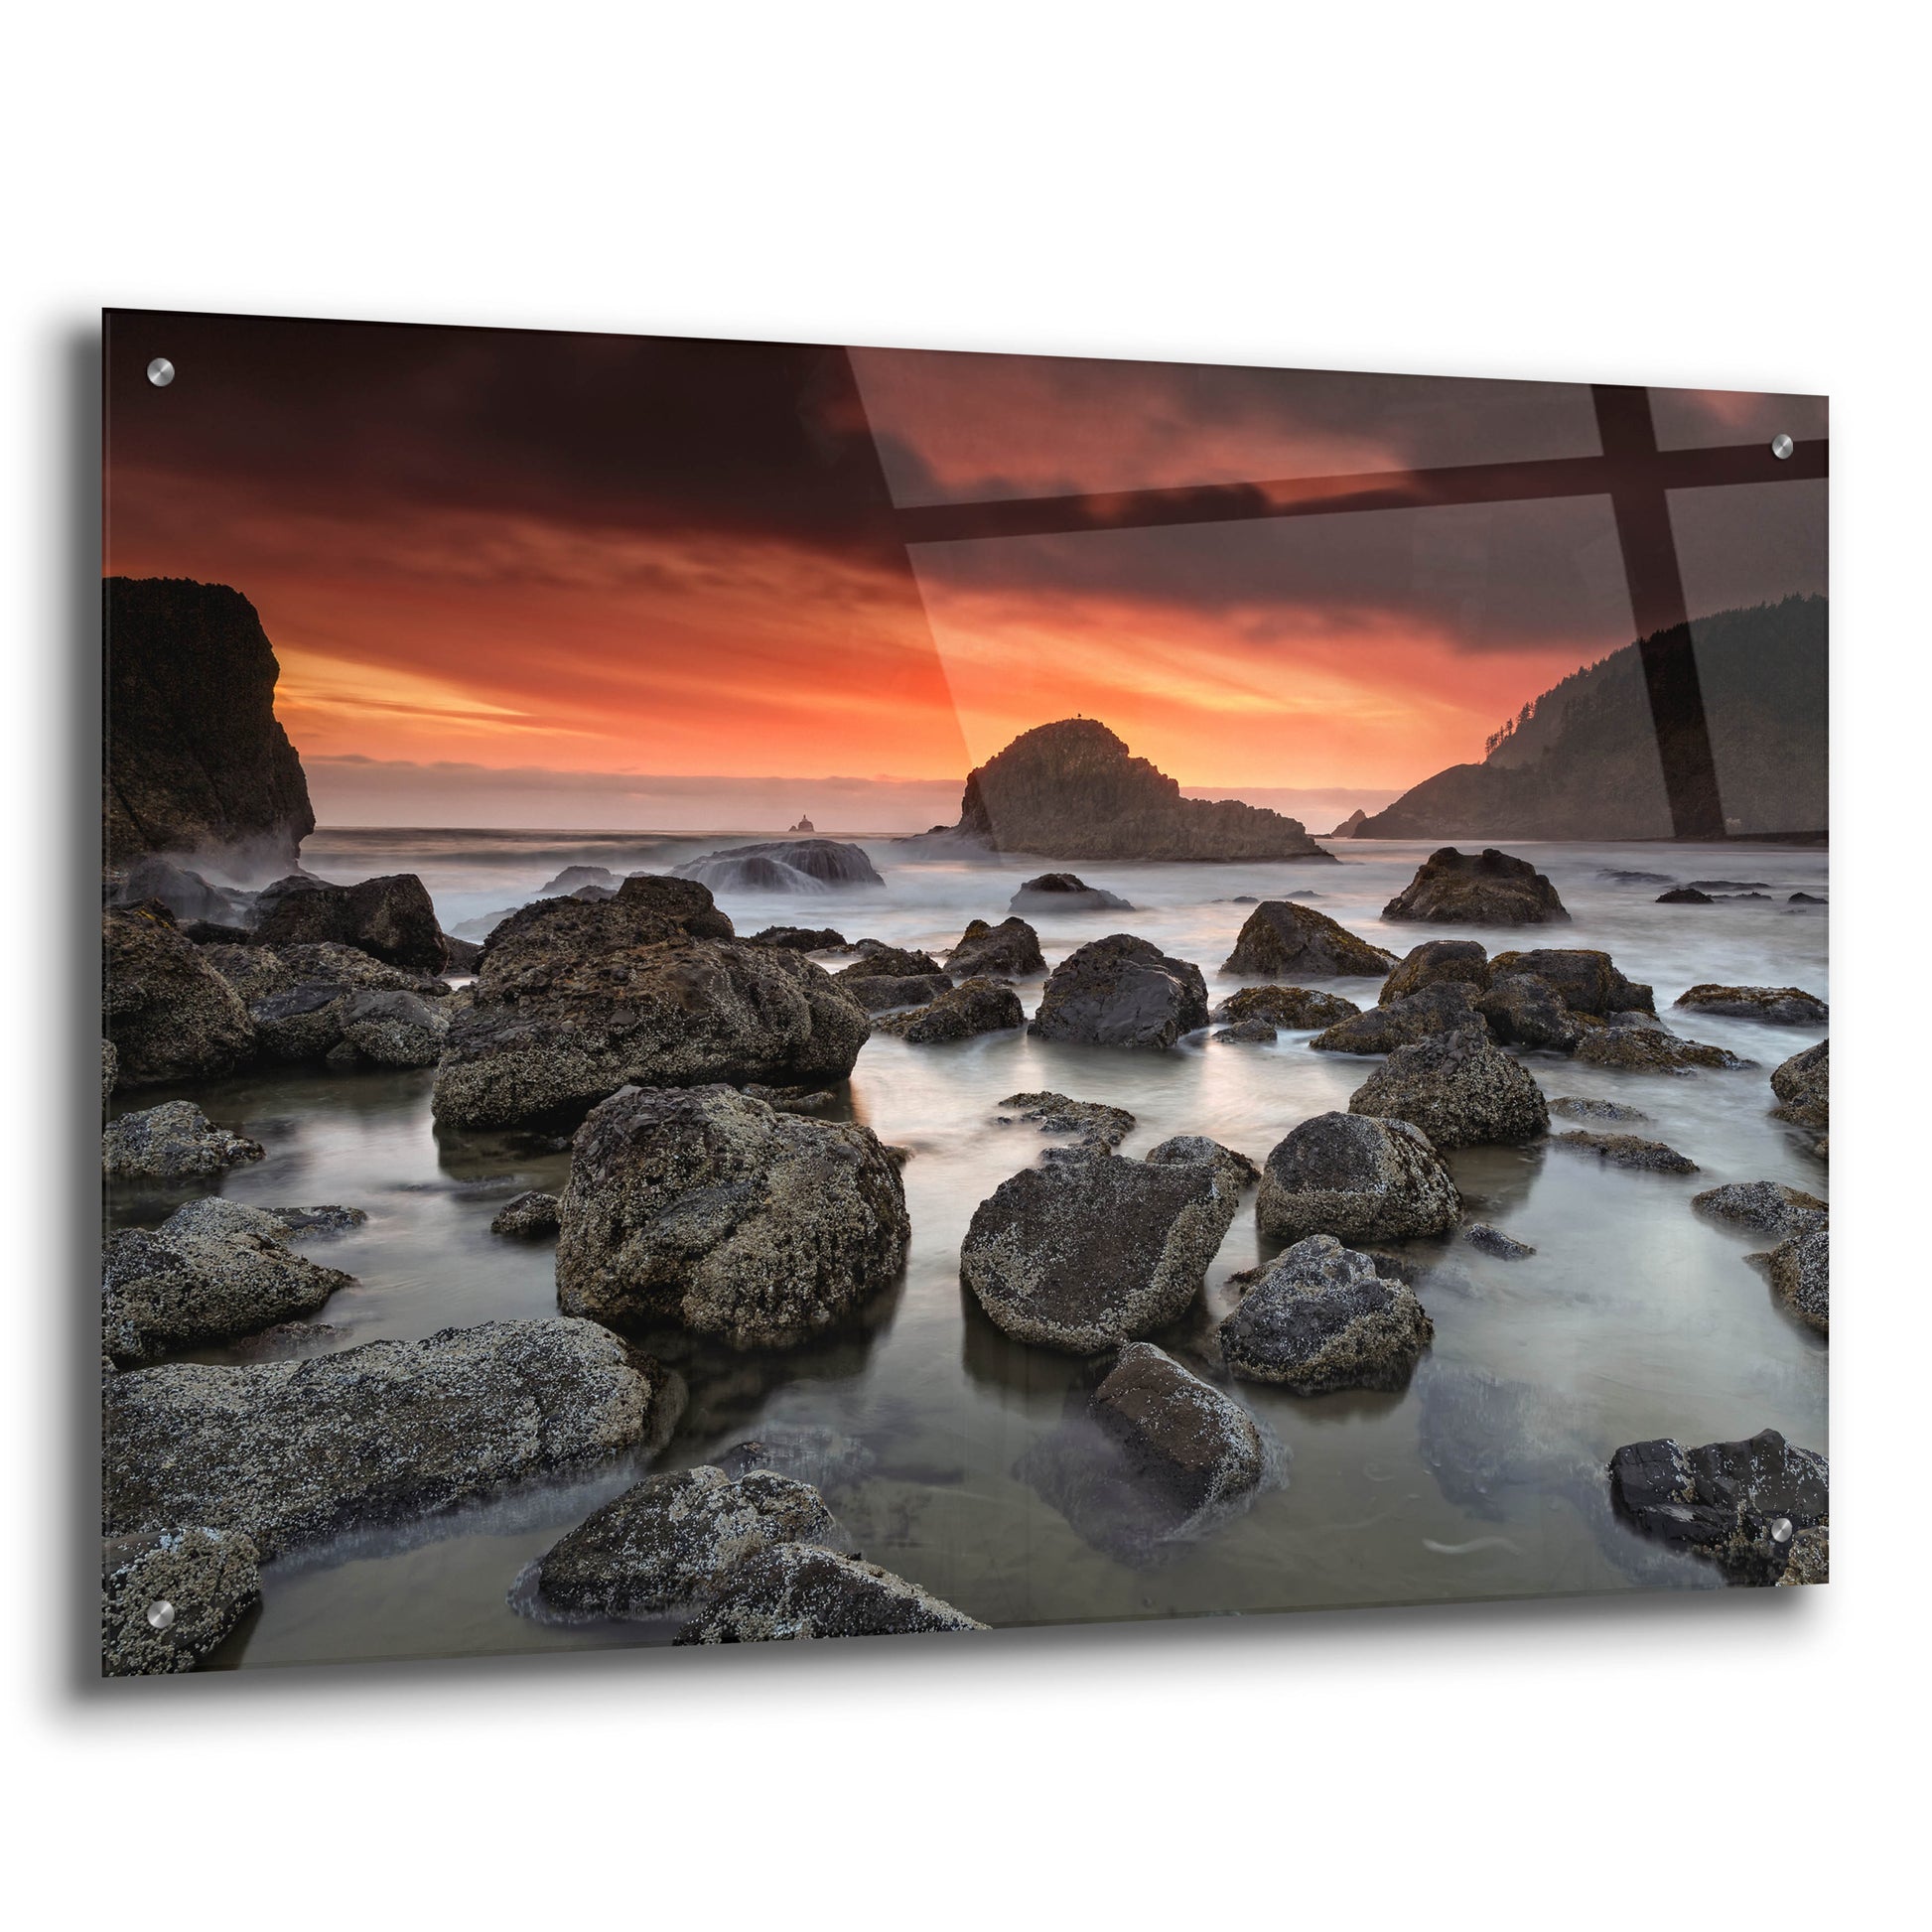 Epic Art 'Indian Beach Sunset' by Rick Berk, Acrylic Glass Wall Art,36x24